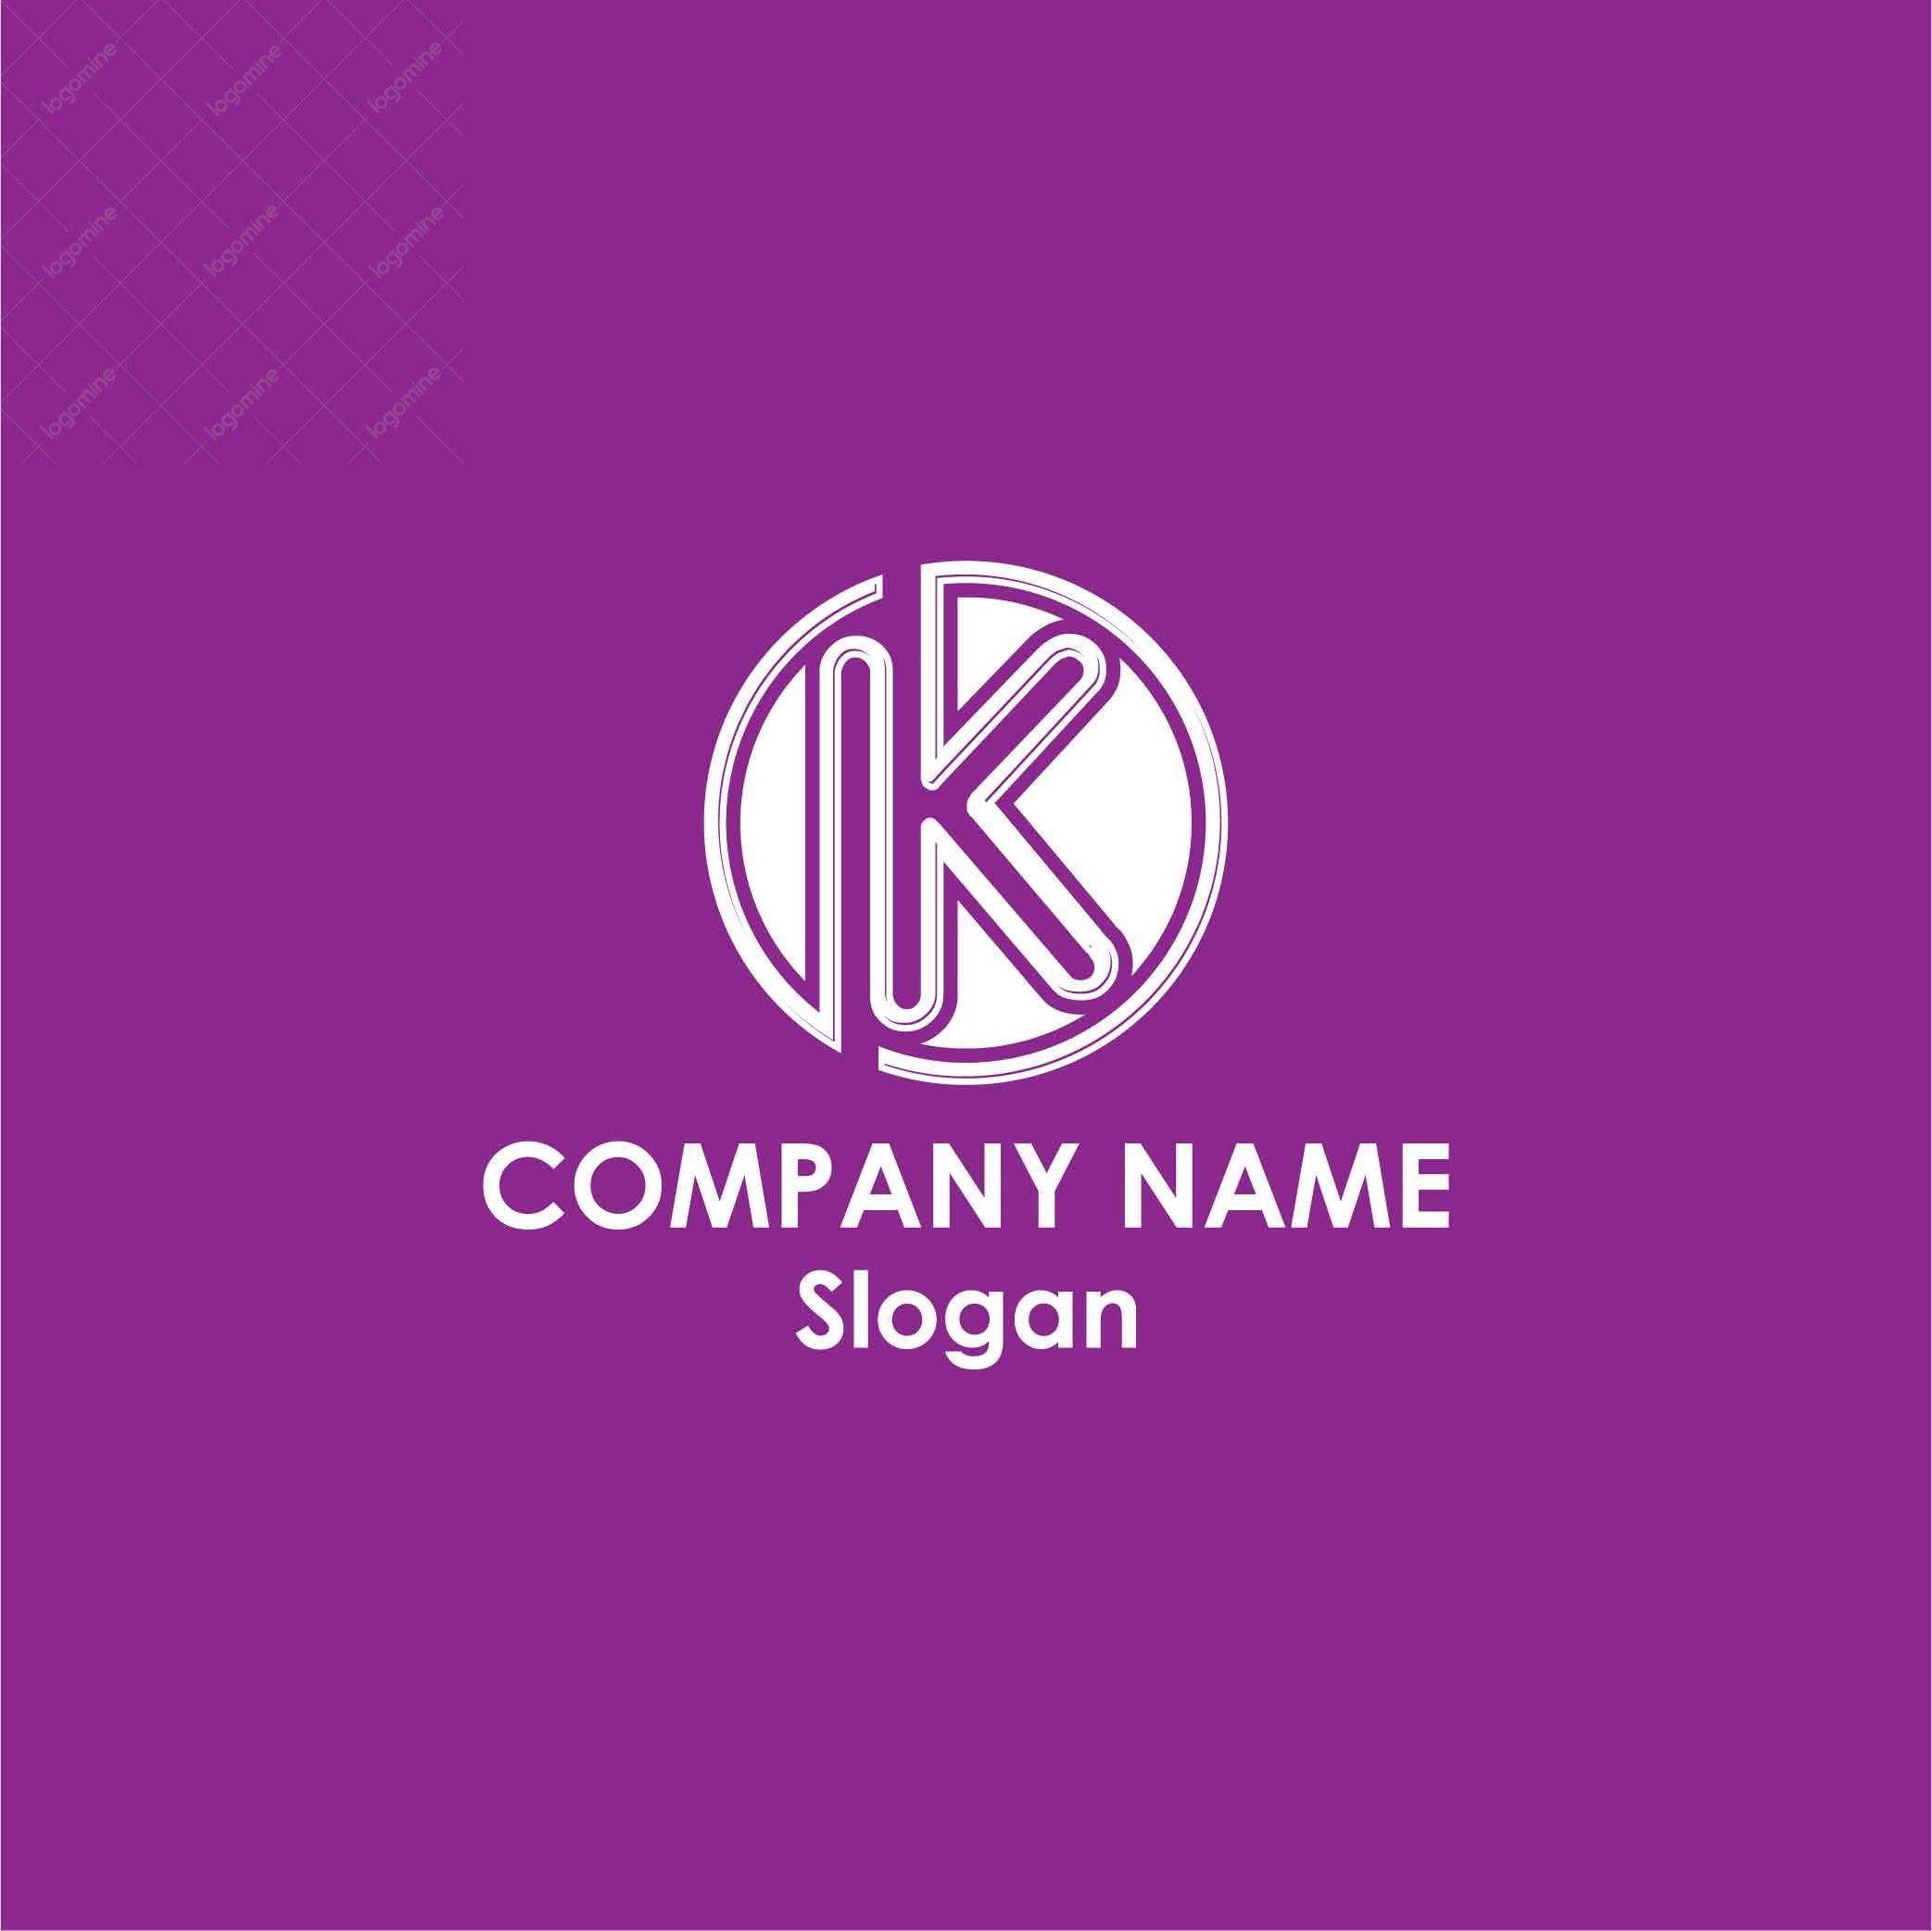 Maroon K Logo - Alphabet K Logo # 9 Mine Logo Design Company